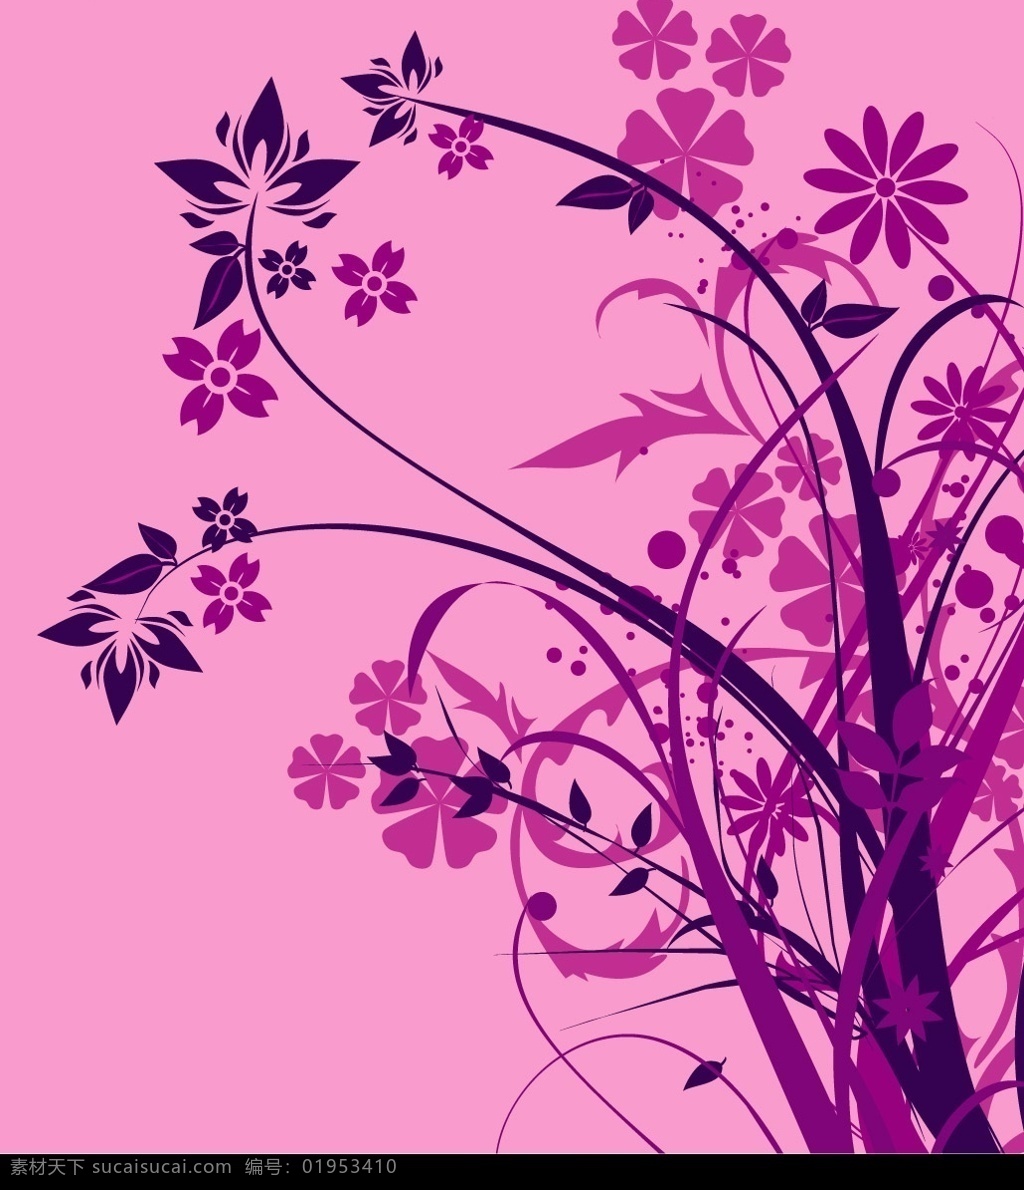 紫色 时尚 花卉 剪影 矢量 生物世界 花草 矢量图库